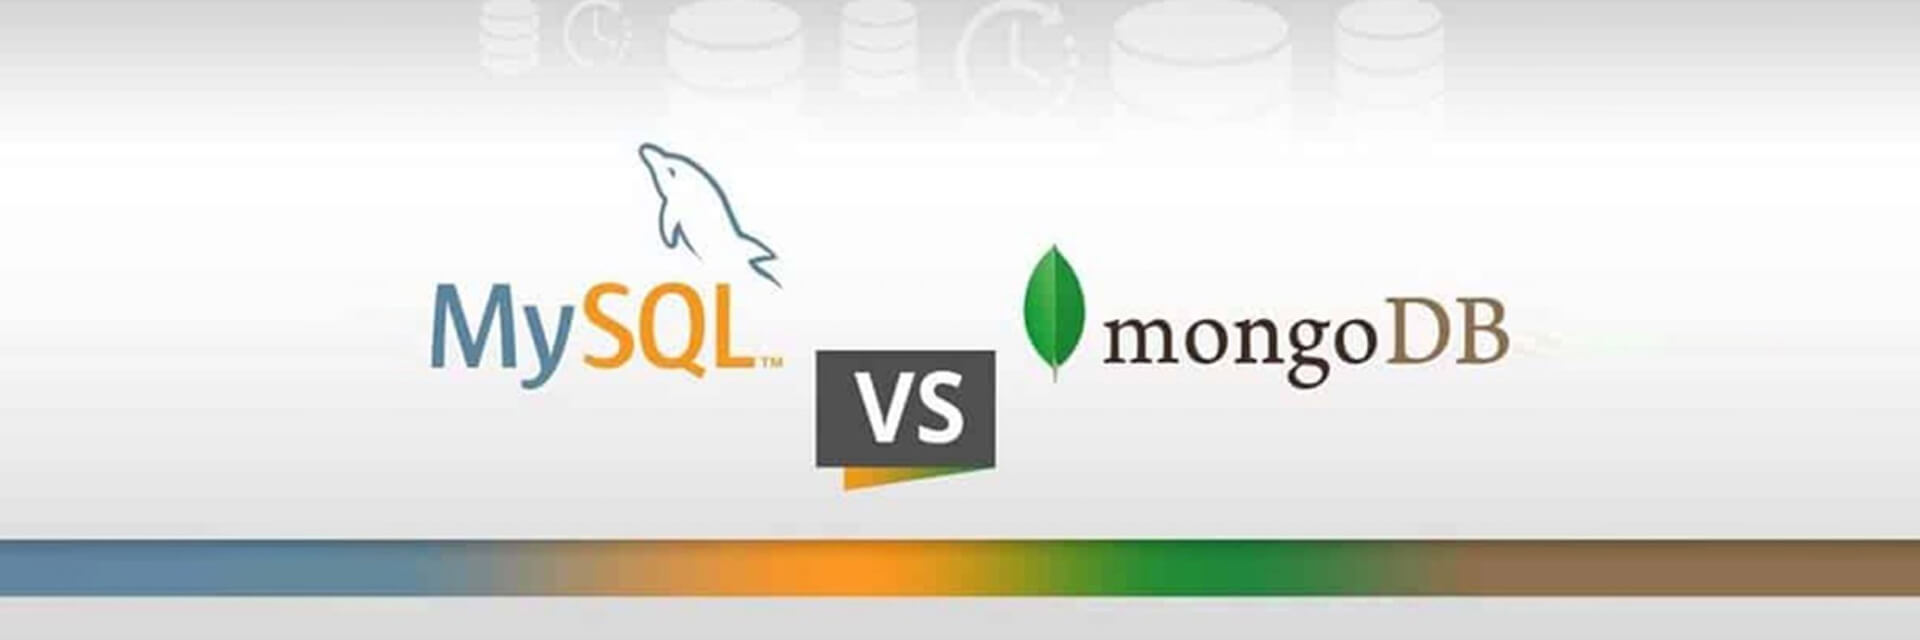 MongoDB VS MySQL: Which database is better?